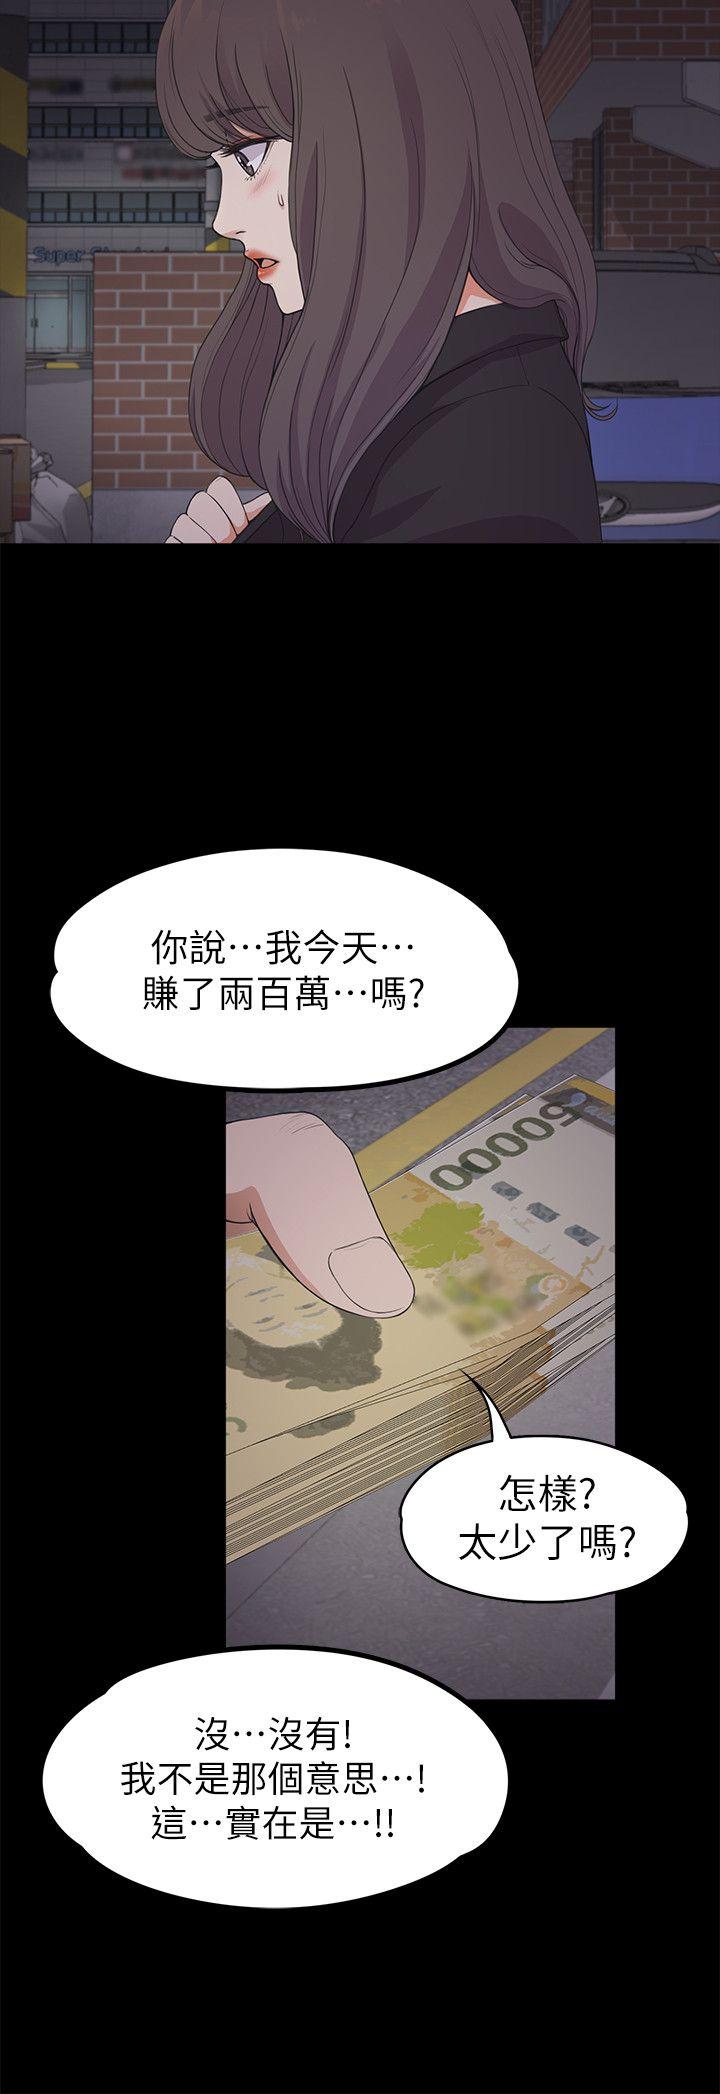 《爱上酒店妹(江南罗曼史)》漫画 第20话 - 一天赚到的钱